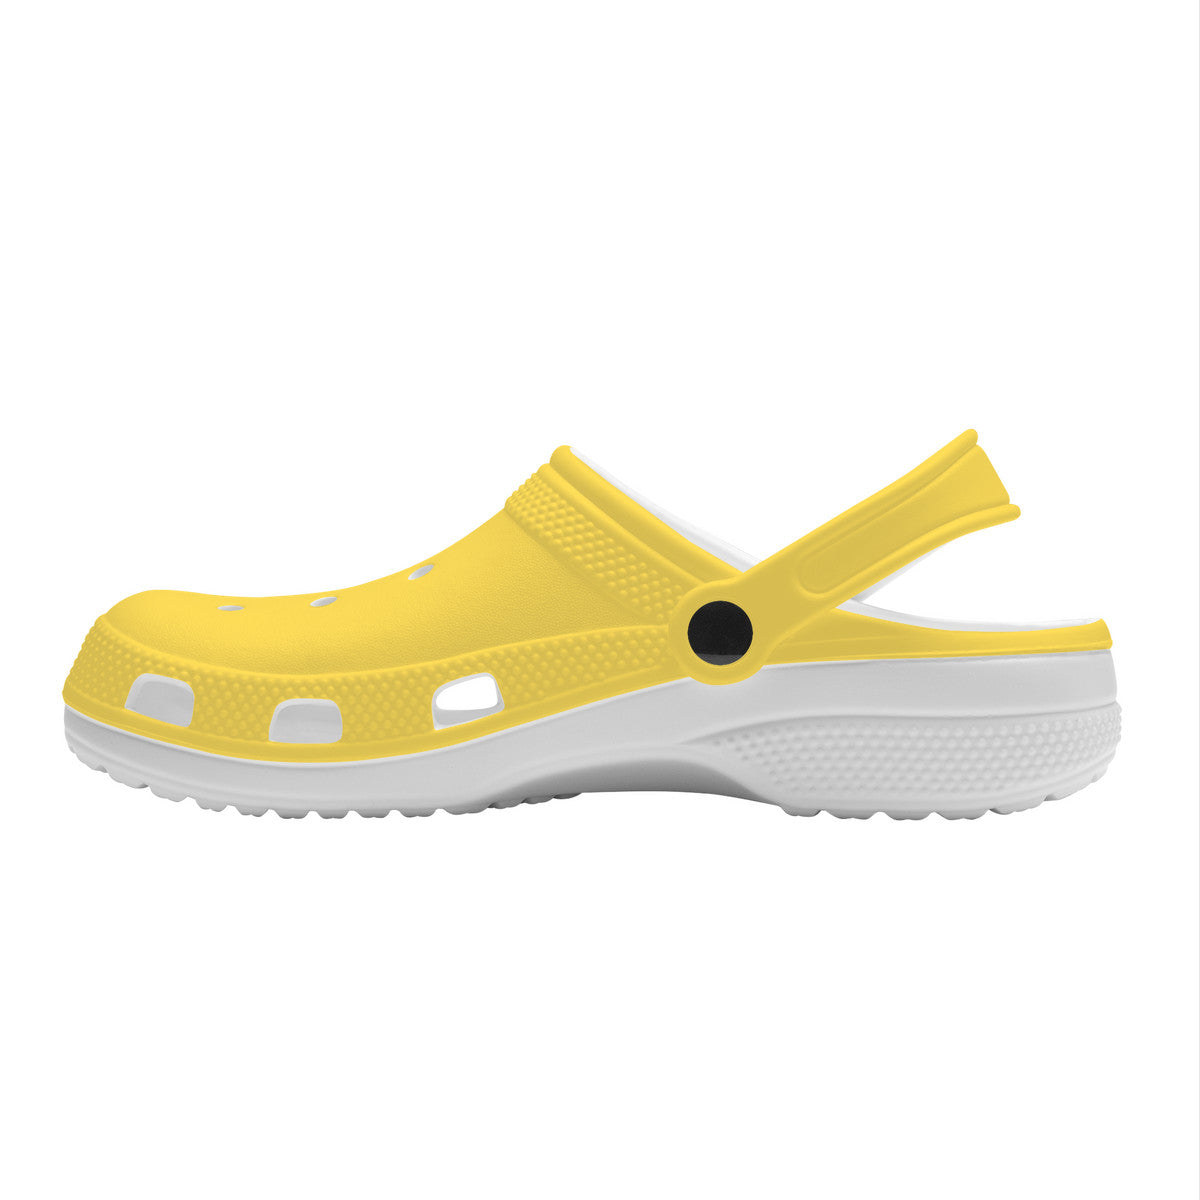 Urban Island Gear Sunshine Crocs